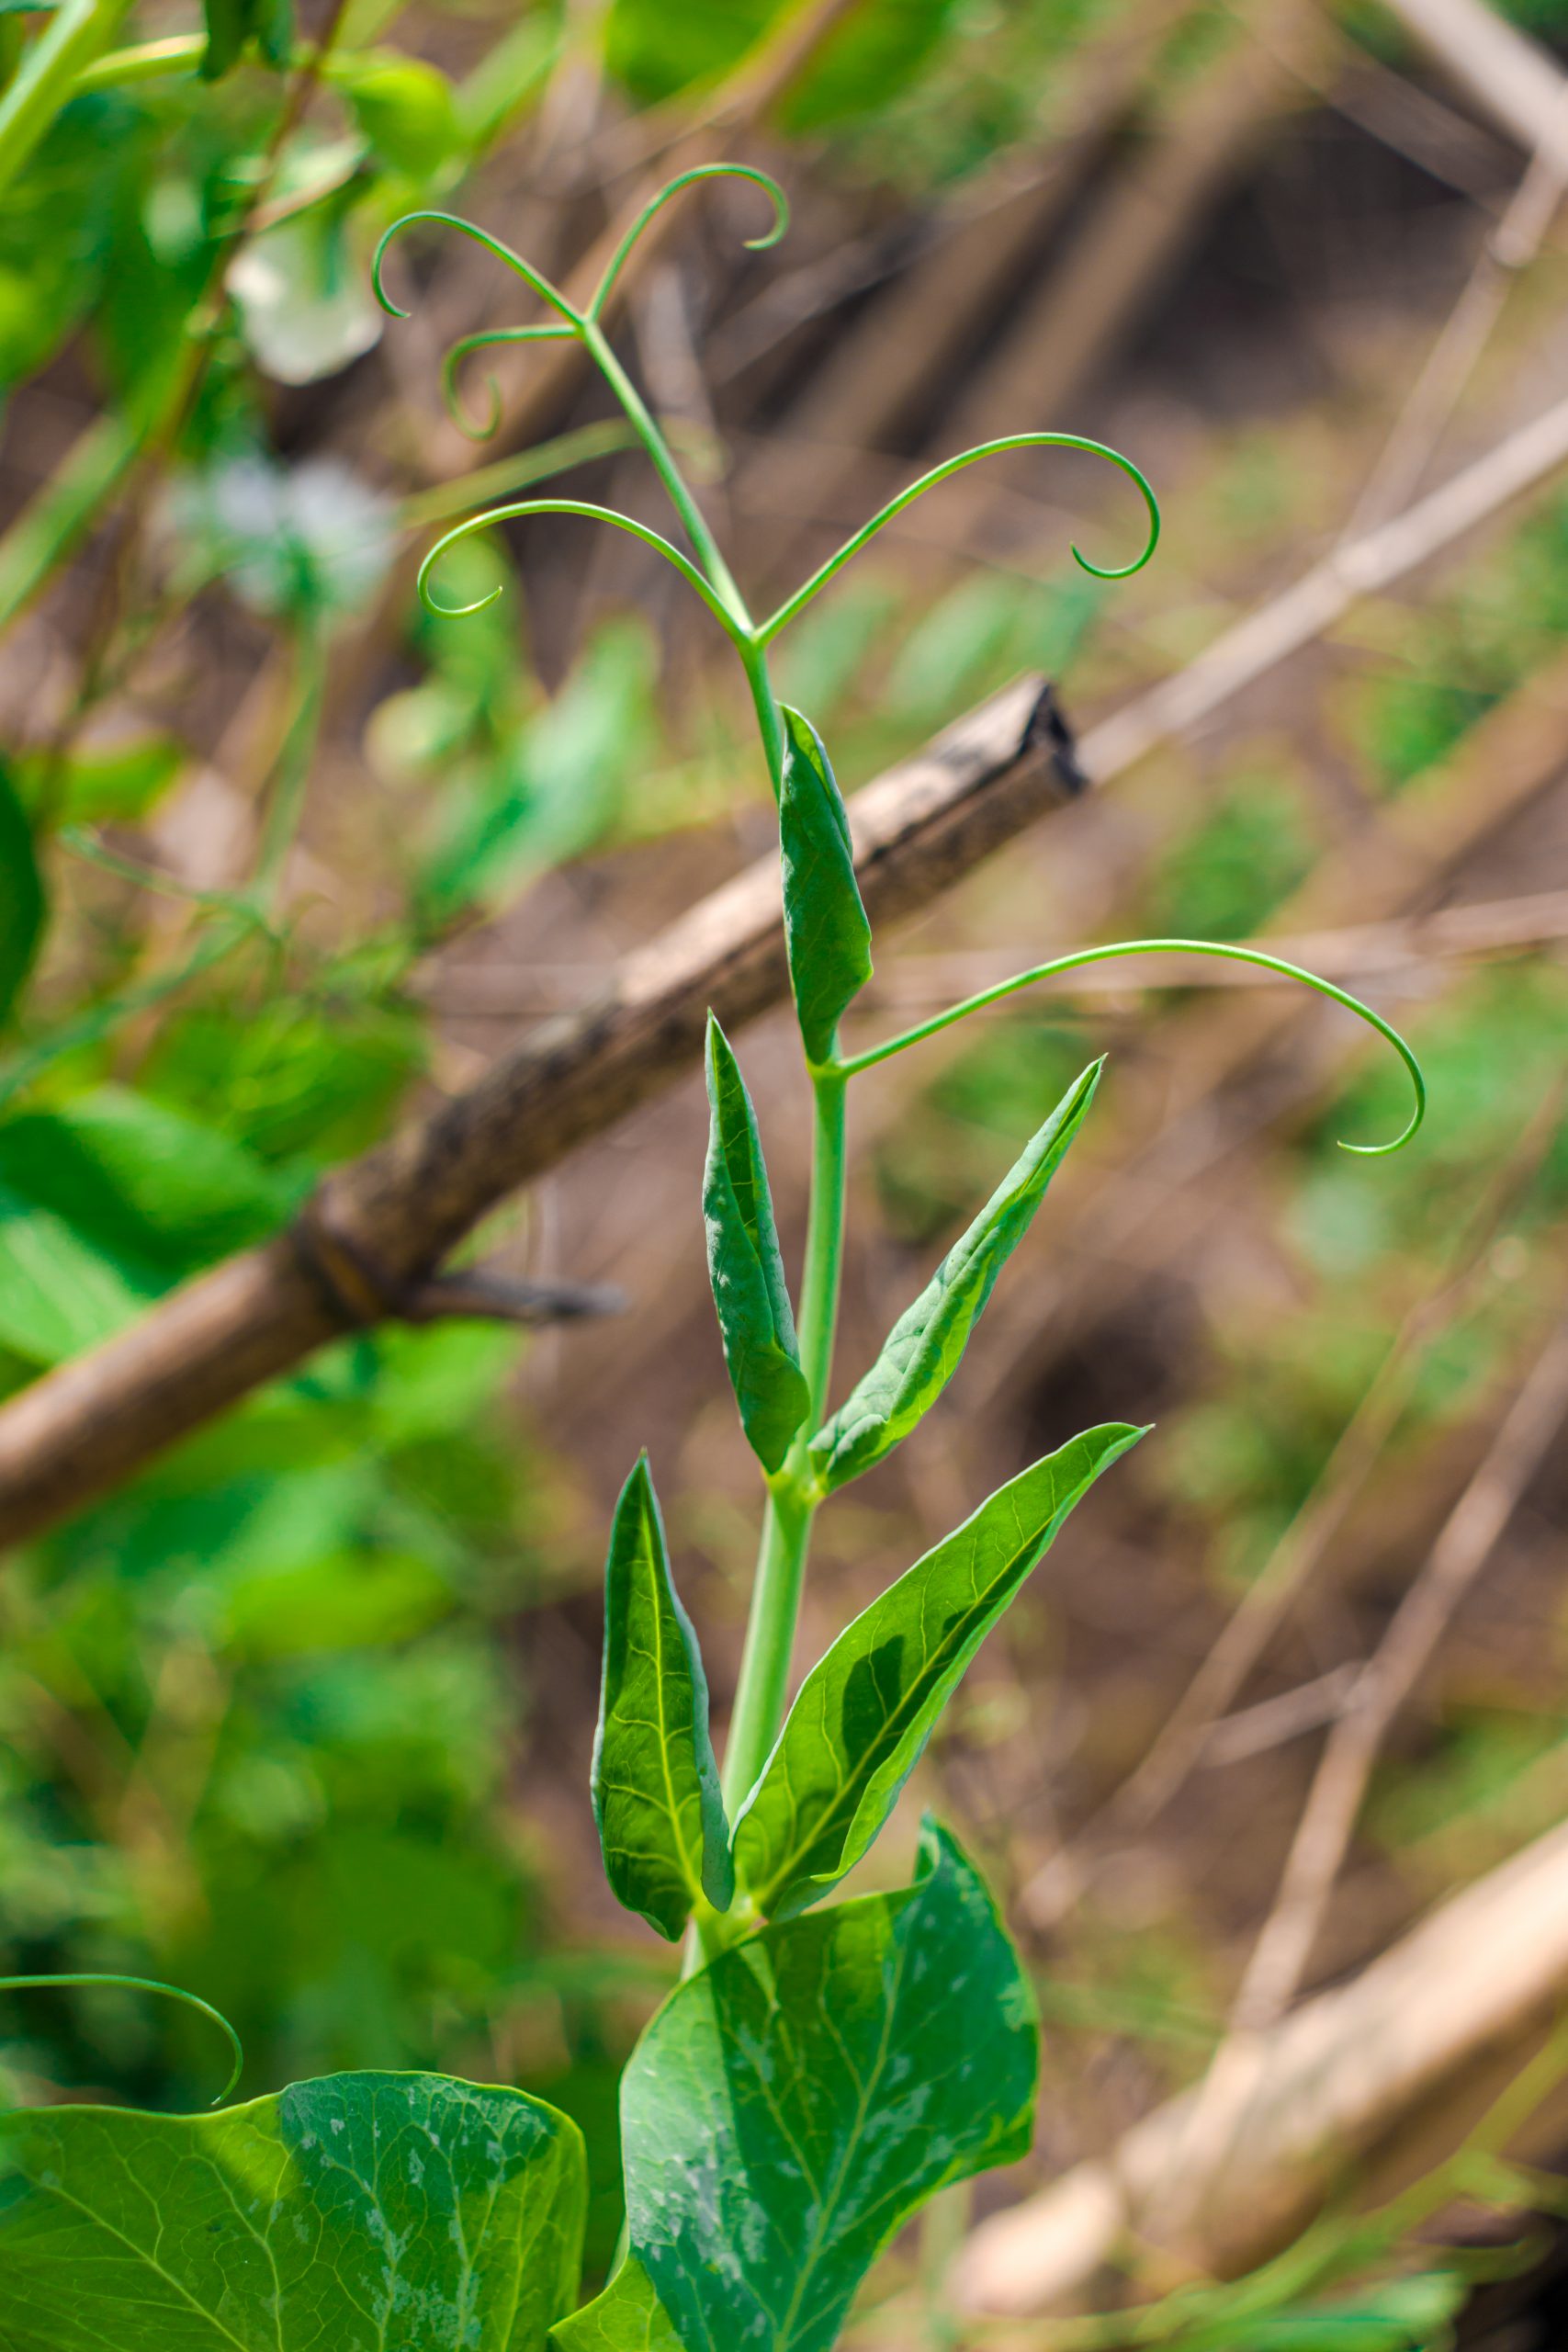 A pea plant